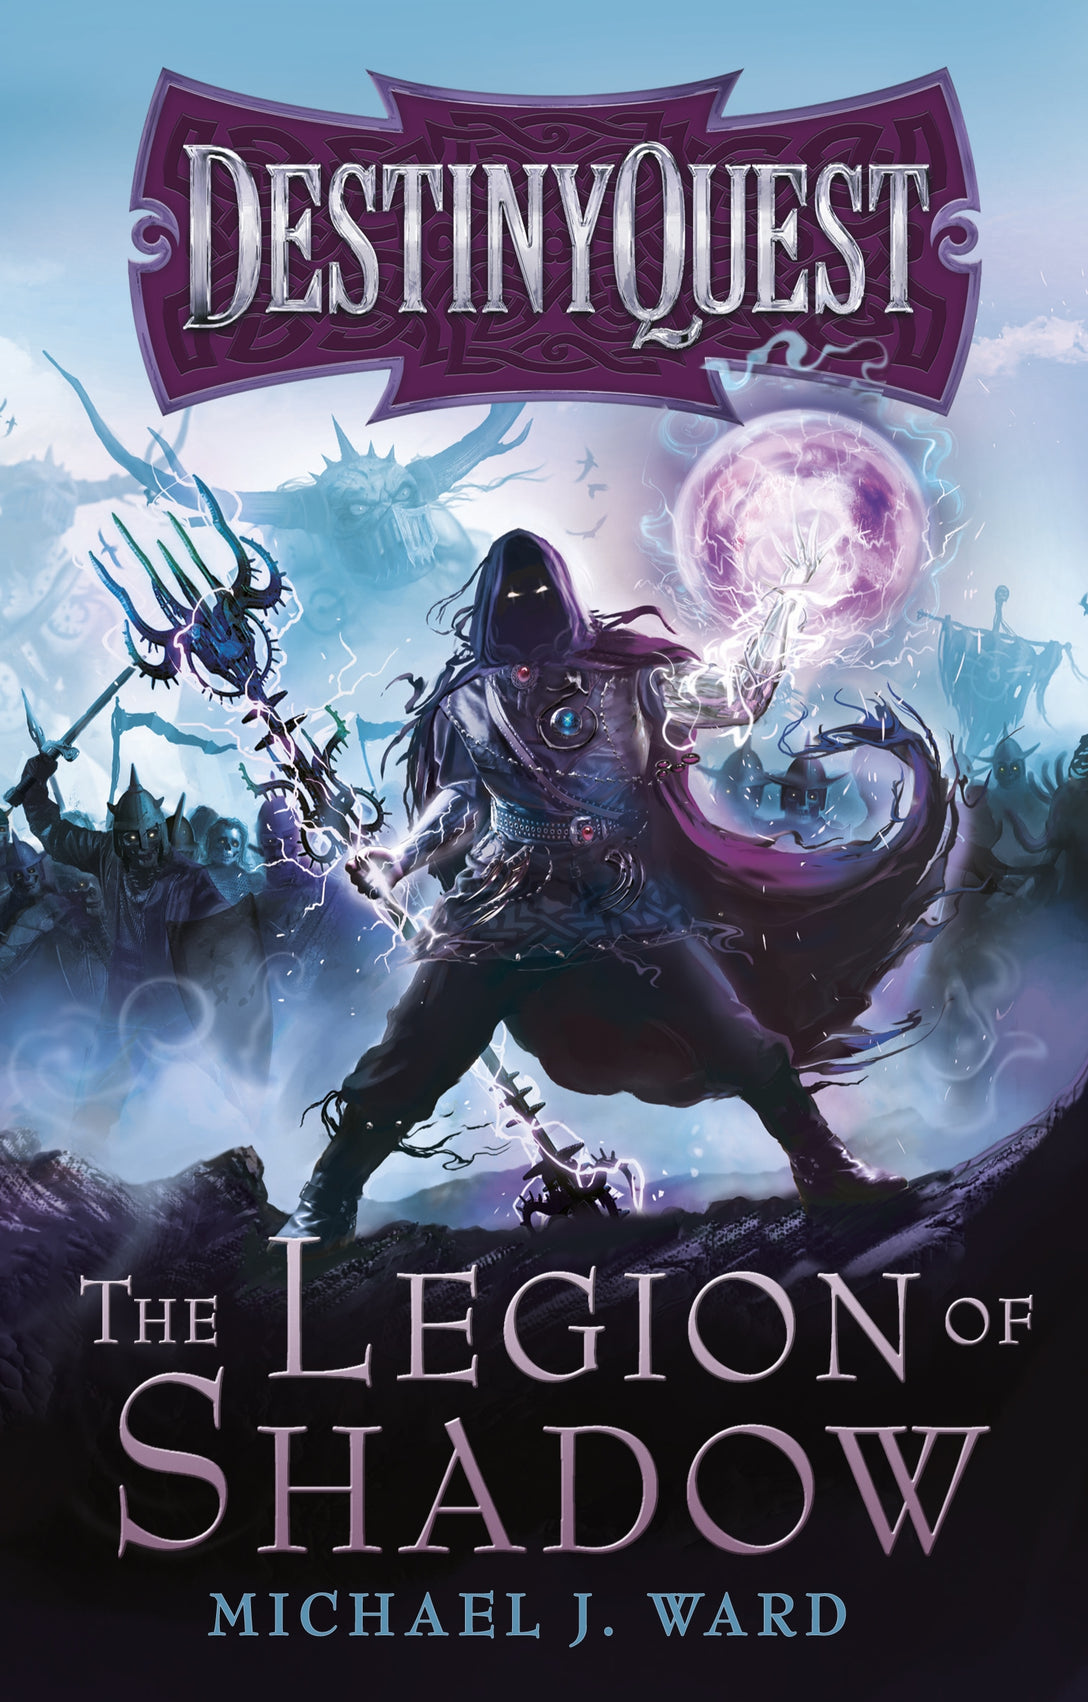 The Legion of Shadow by Michael J. Ward